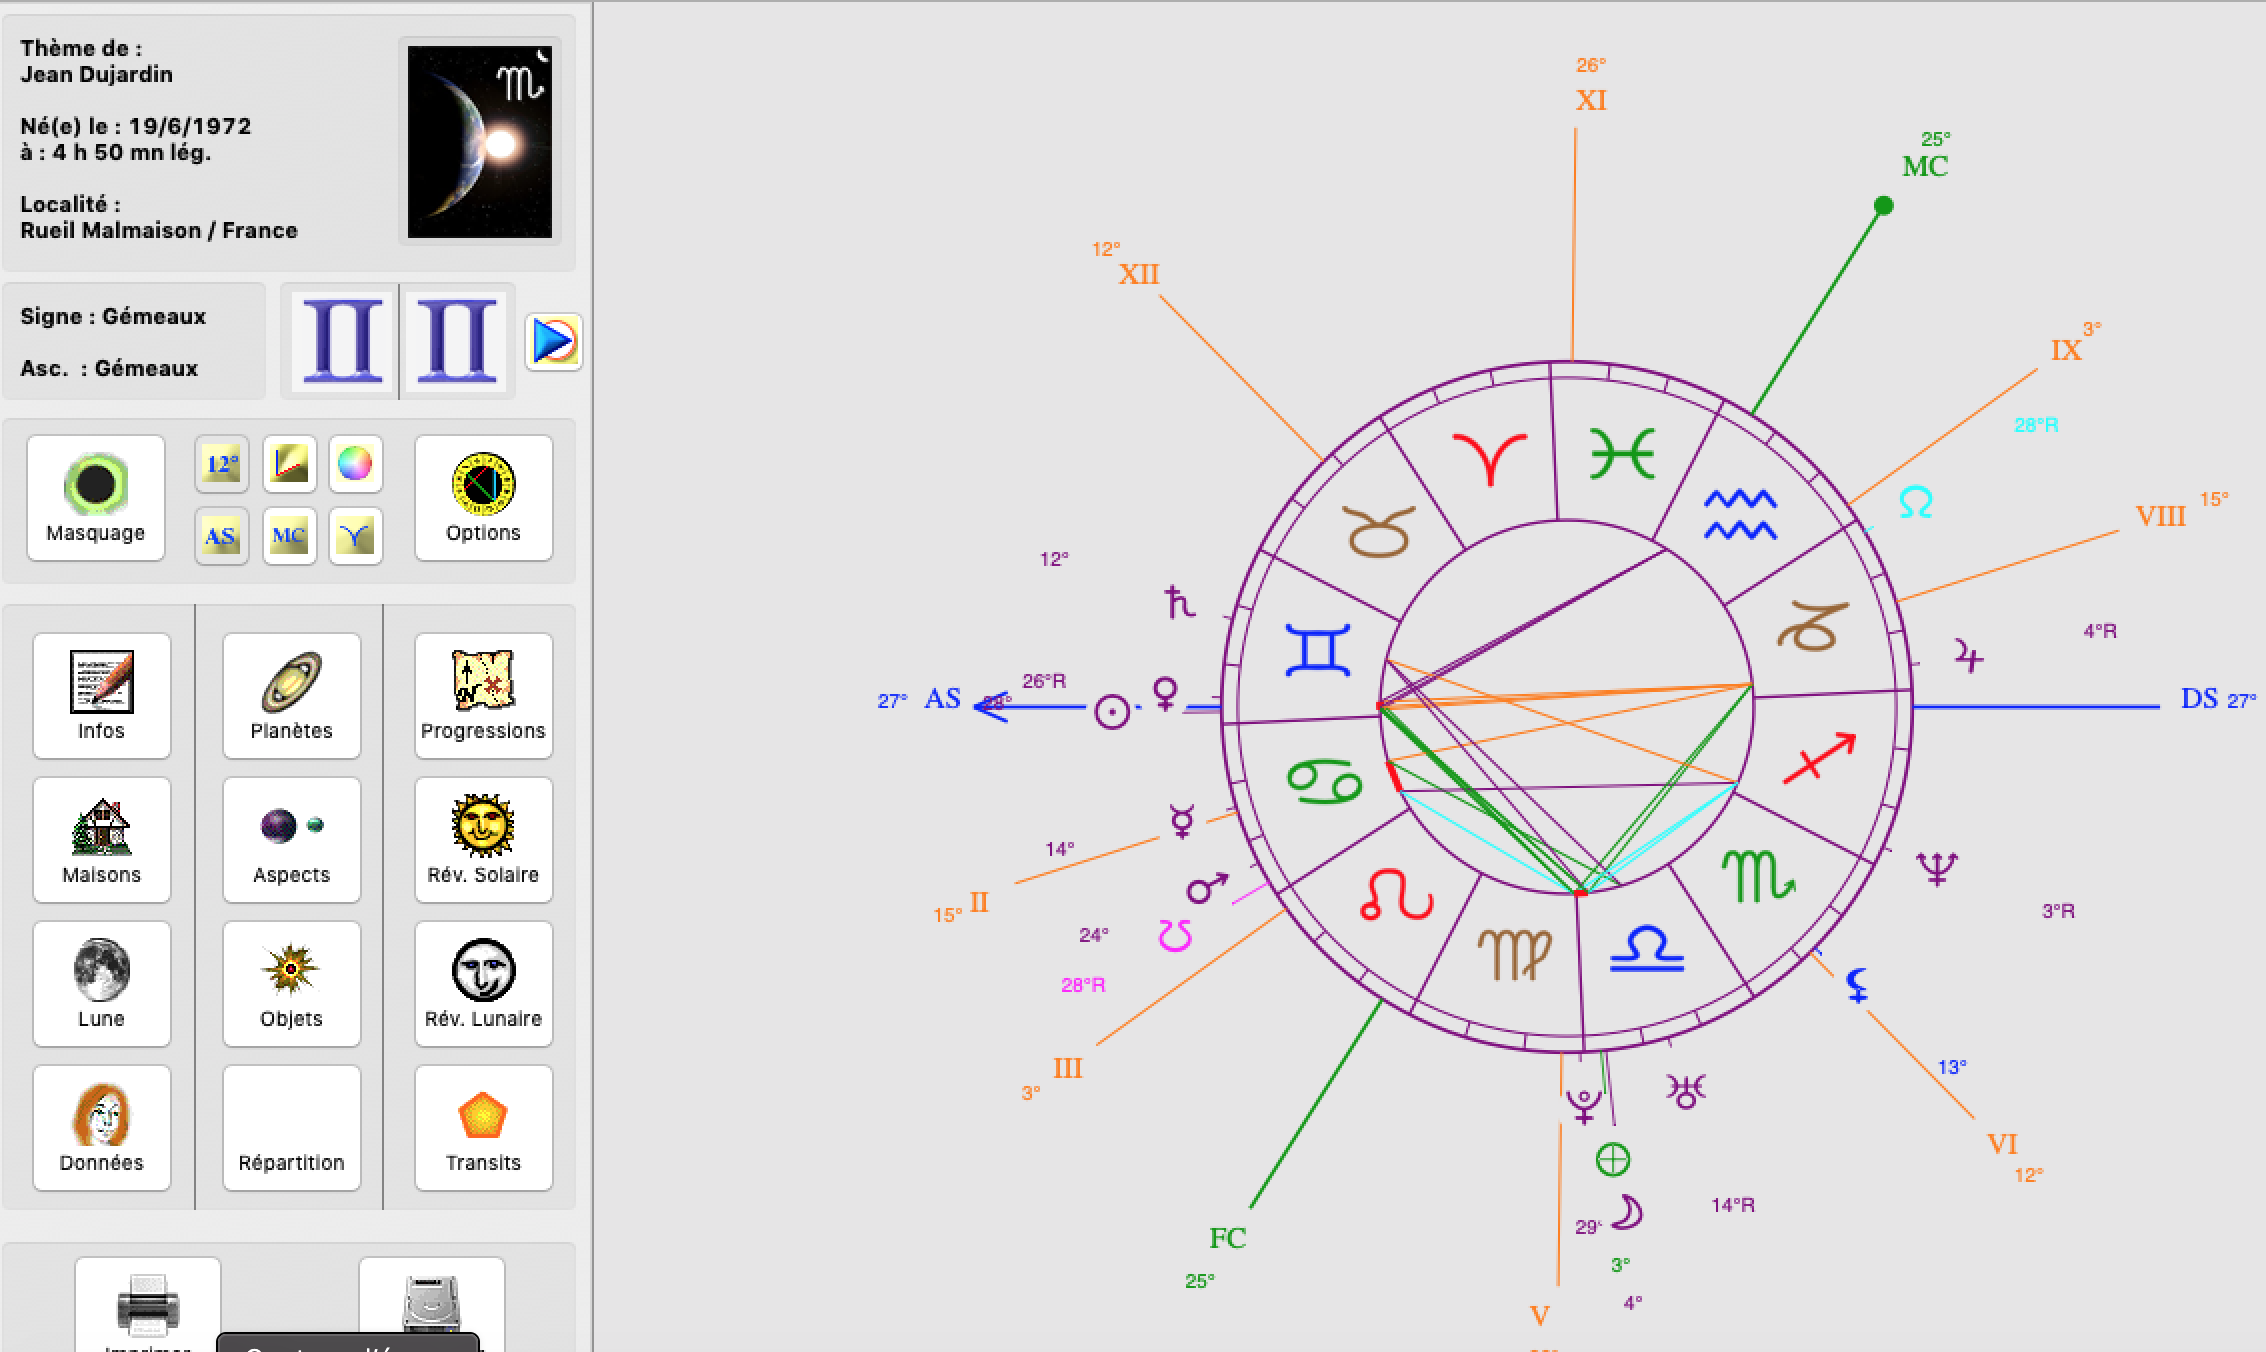 Jean Dujardin thème Astrologique charisme Part.2 -Atlaneatro